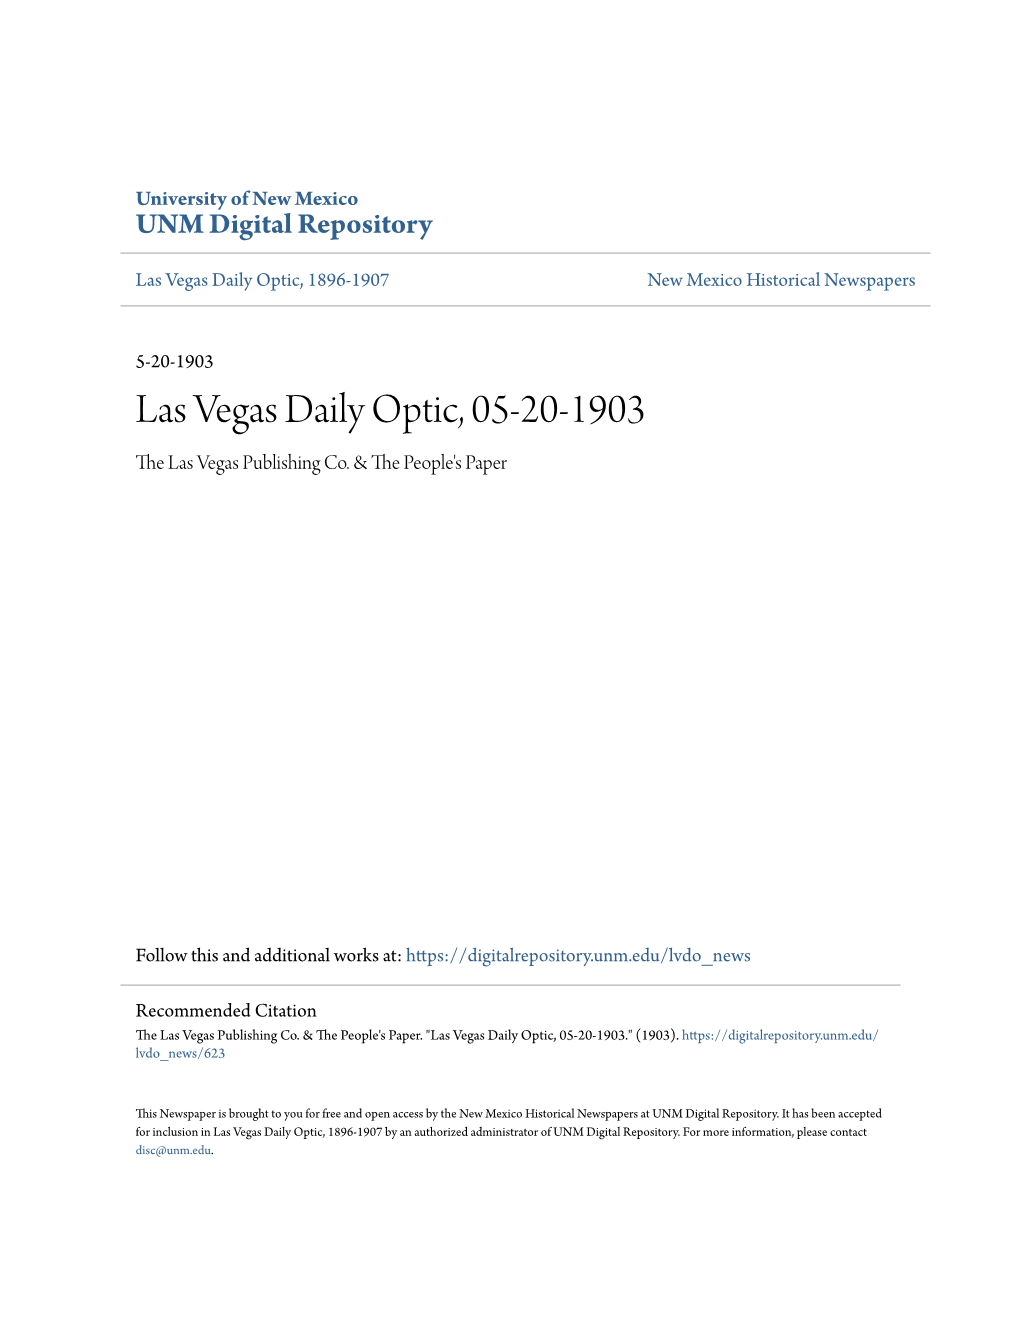 Las Vegas Daily Optic, 05-20-1903 the Las Vegas Publishing Co